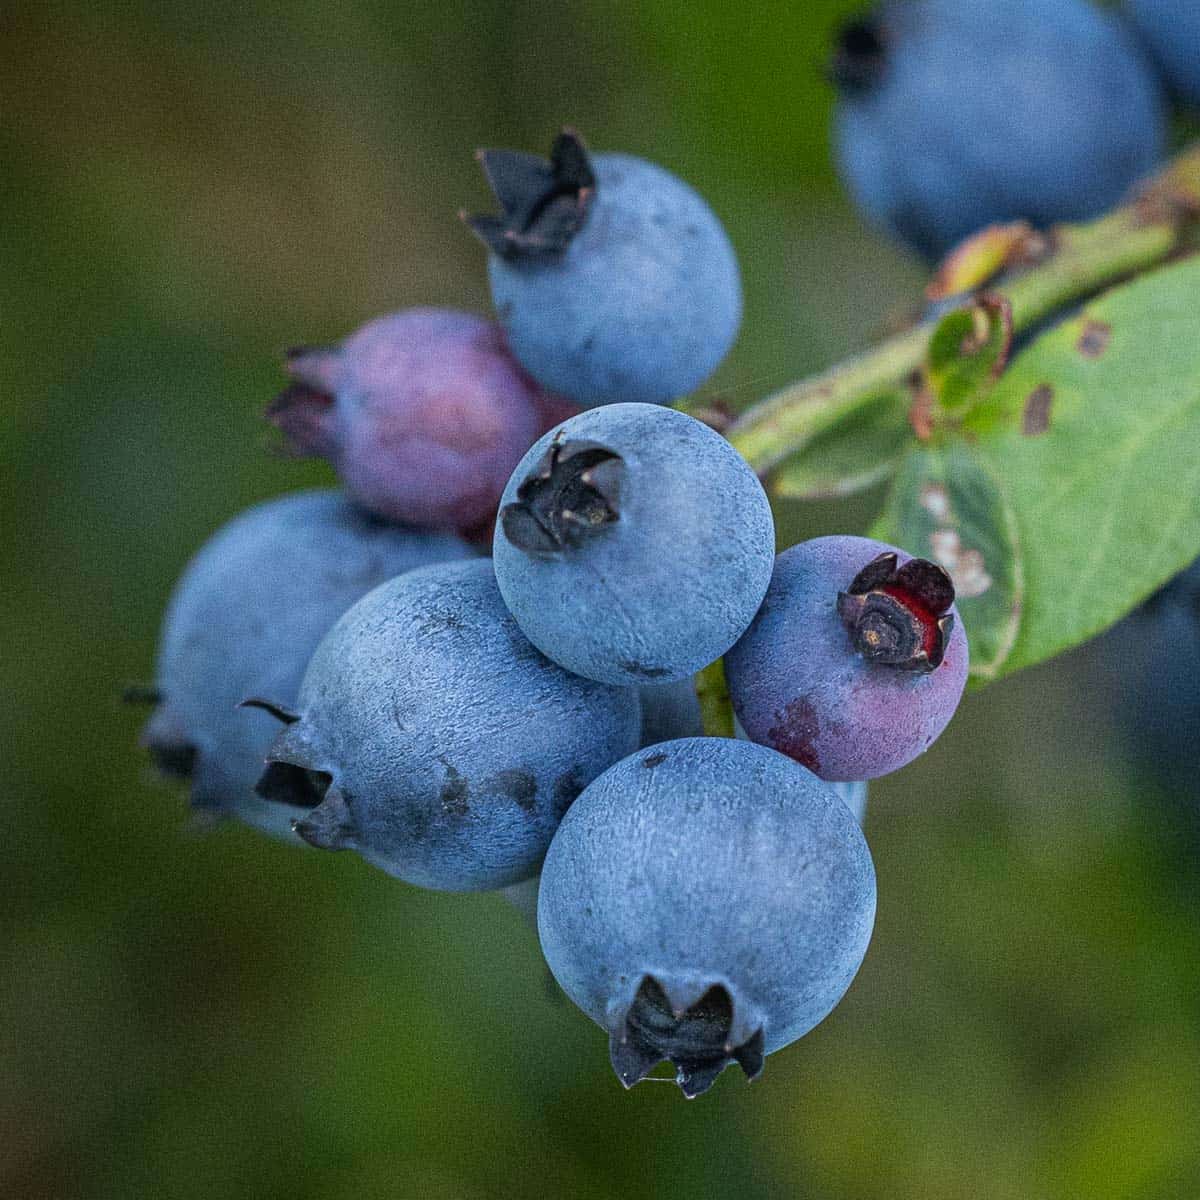 A close up image of ripe wild blueberries Vaccinium angustifolium.